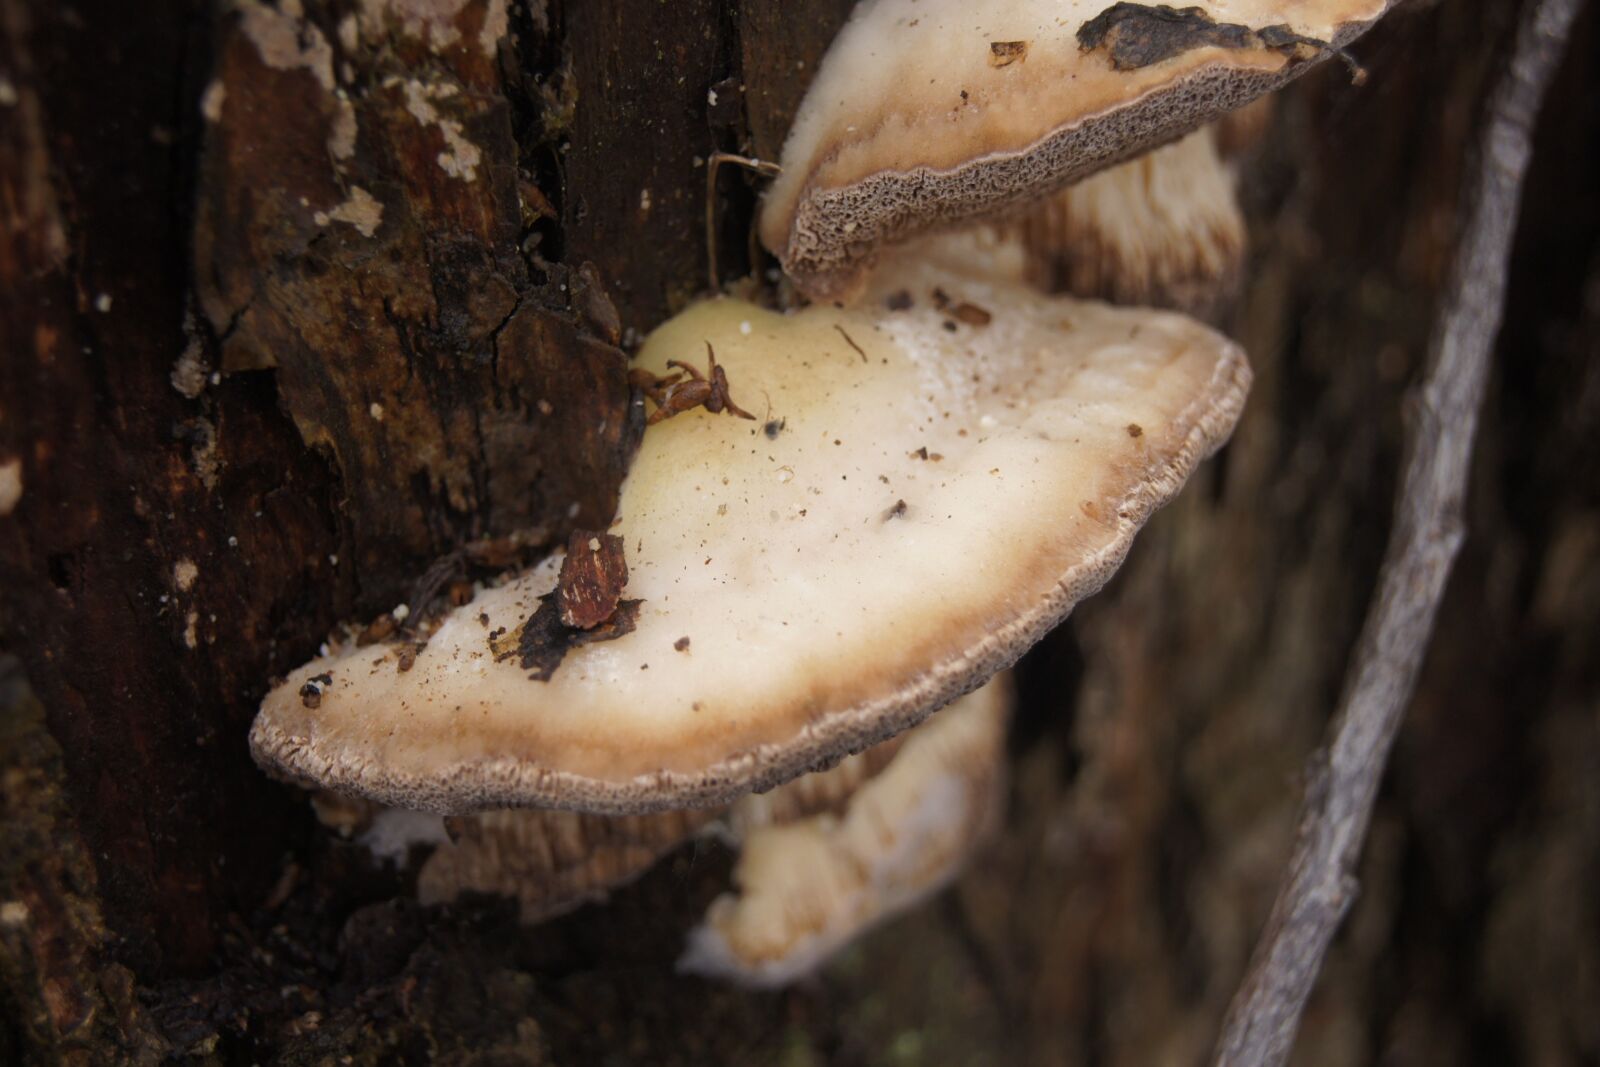 Sony Alpha DSLR-A500 sample photo. Mushroom, autumn, moss photography